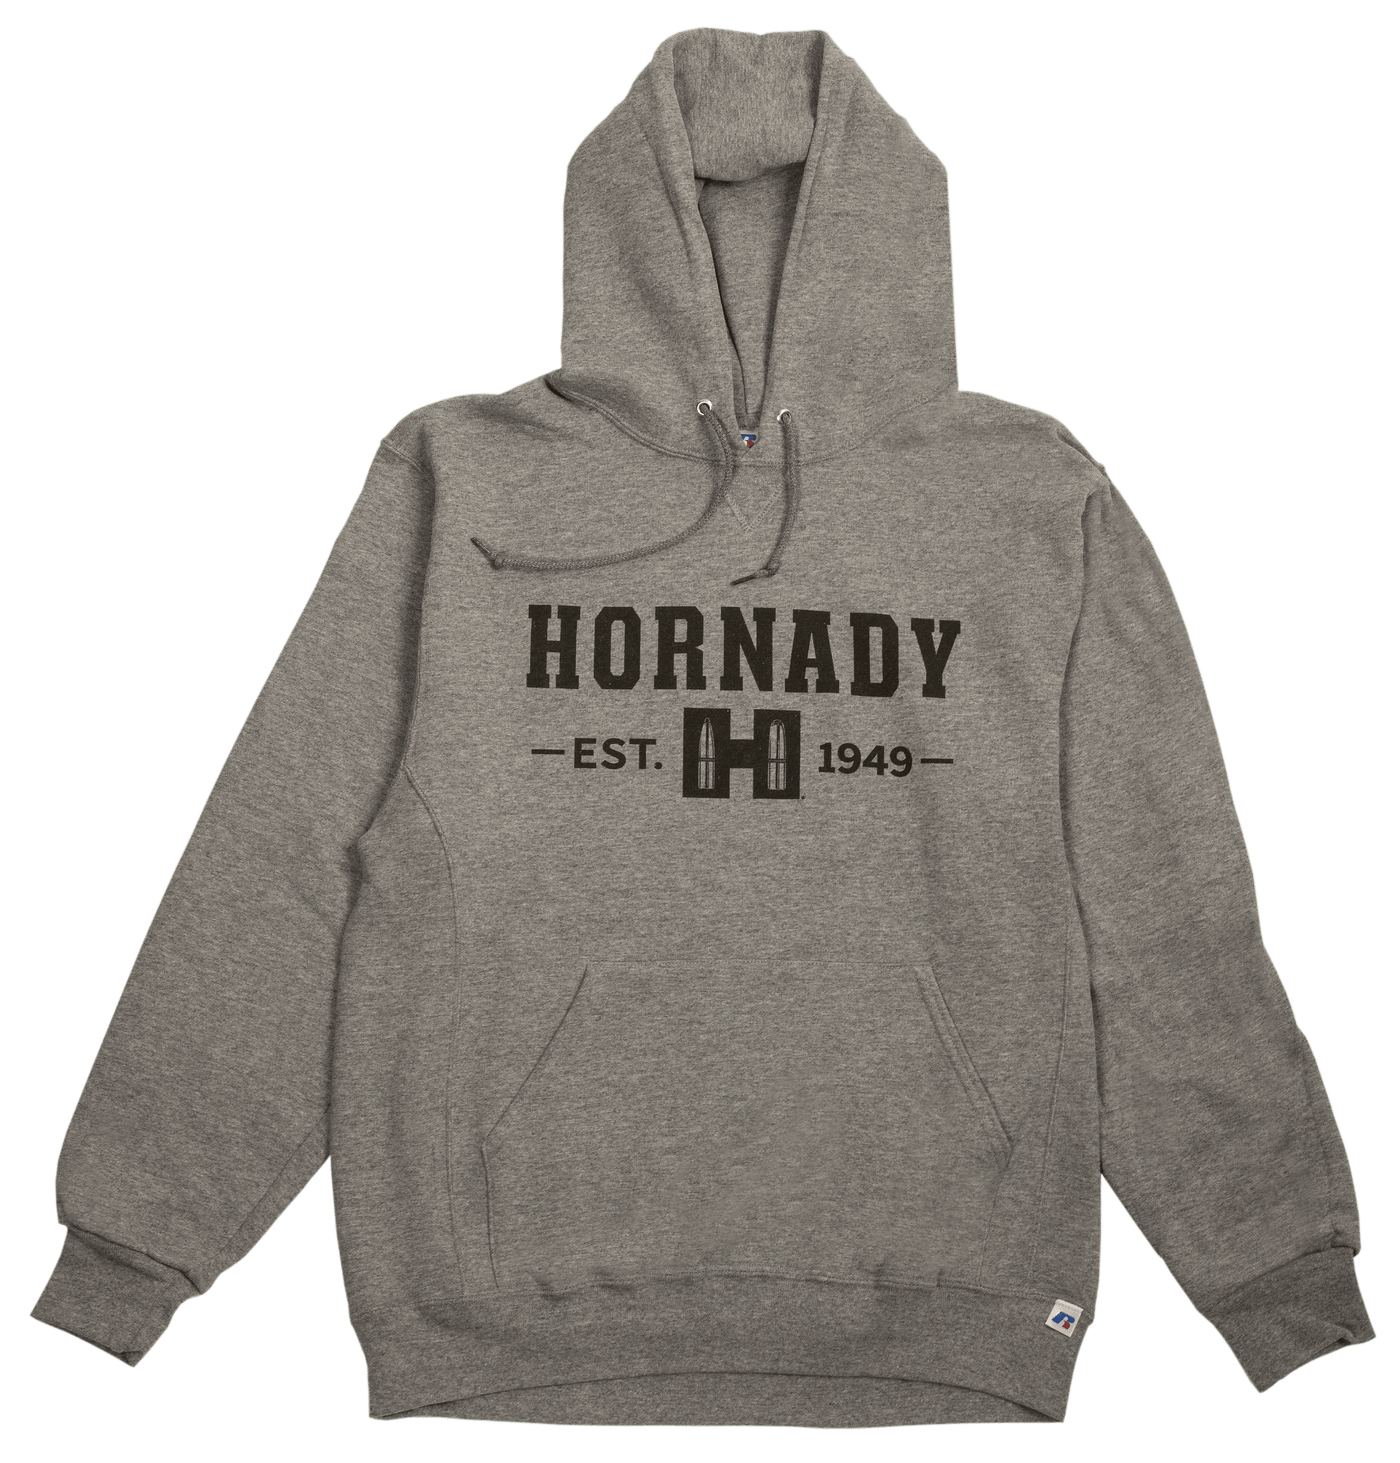 Hornady Hornady Hornady Hoodie, Horn 99595m      Hornady Gray  Hoodie Med Accessories